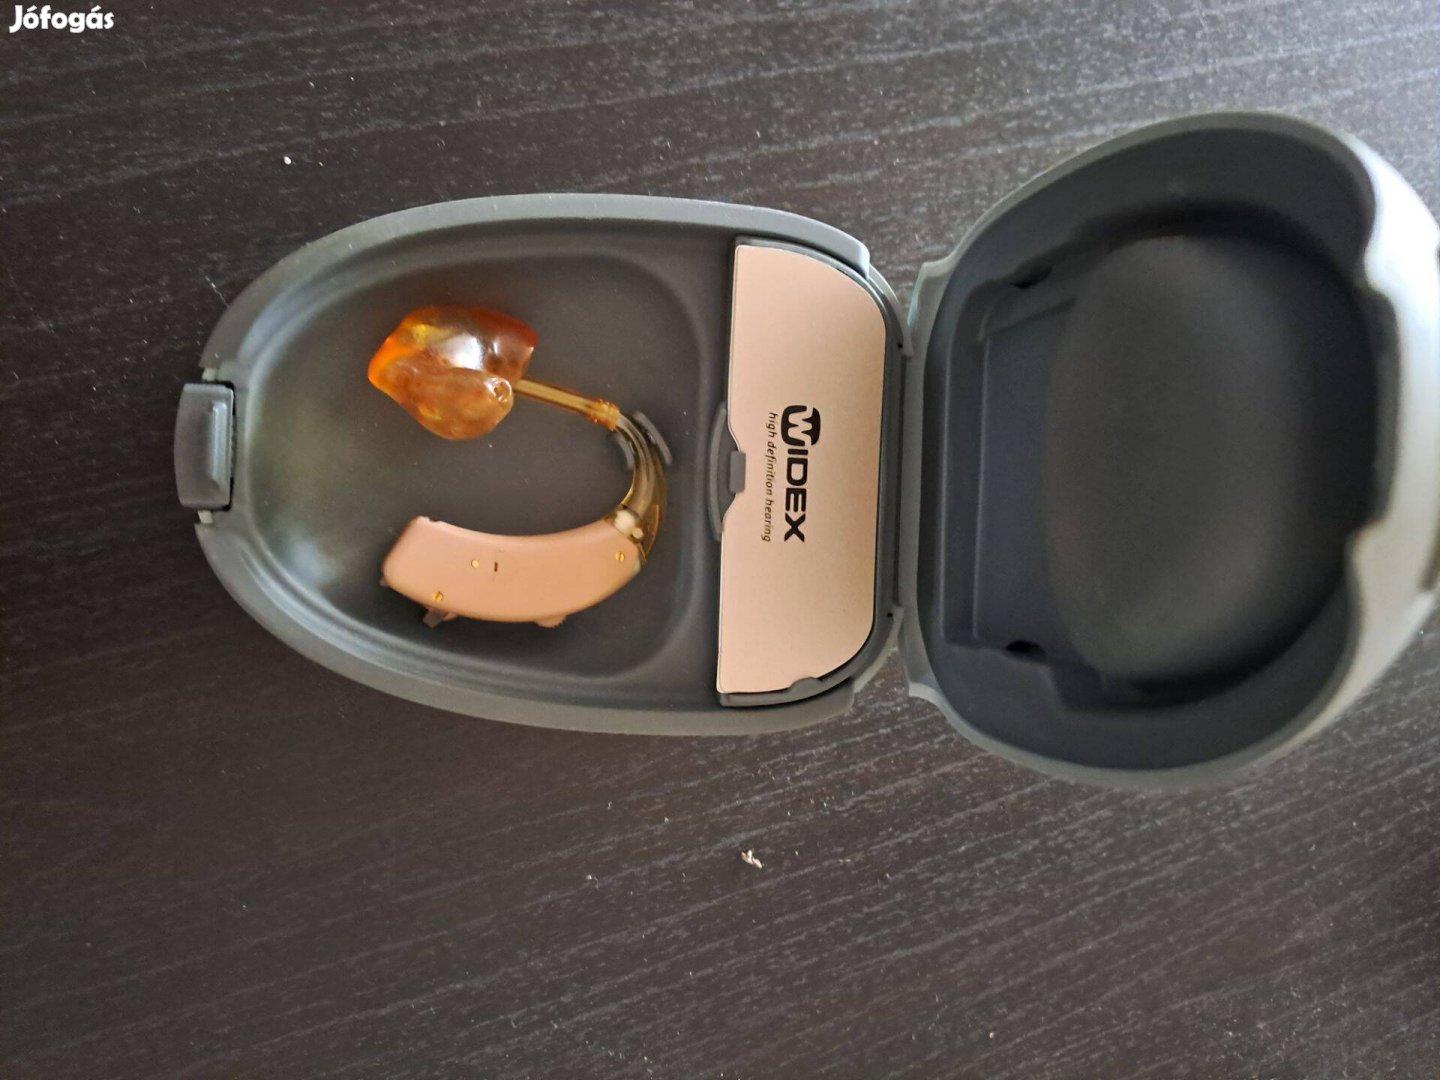 Widex L12E tipusú hallókészülék eladó